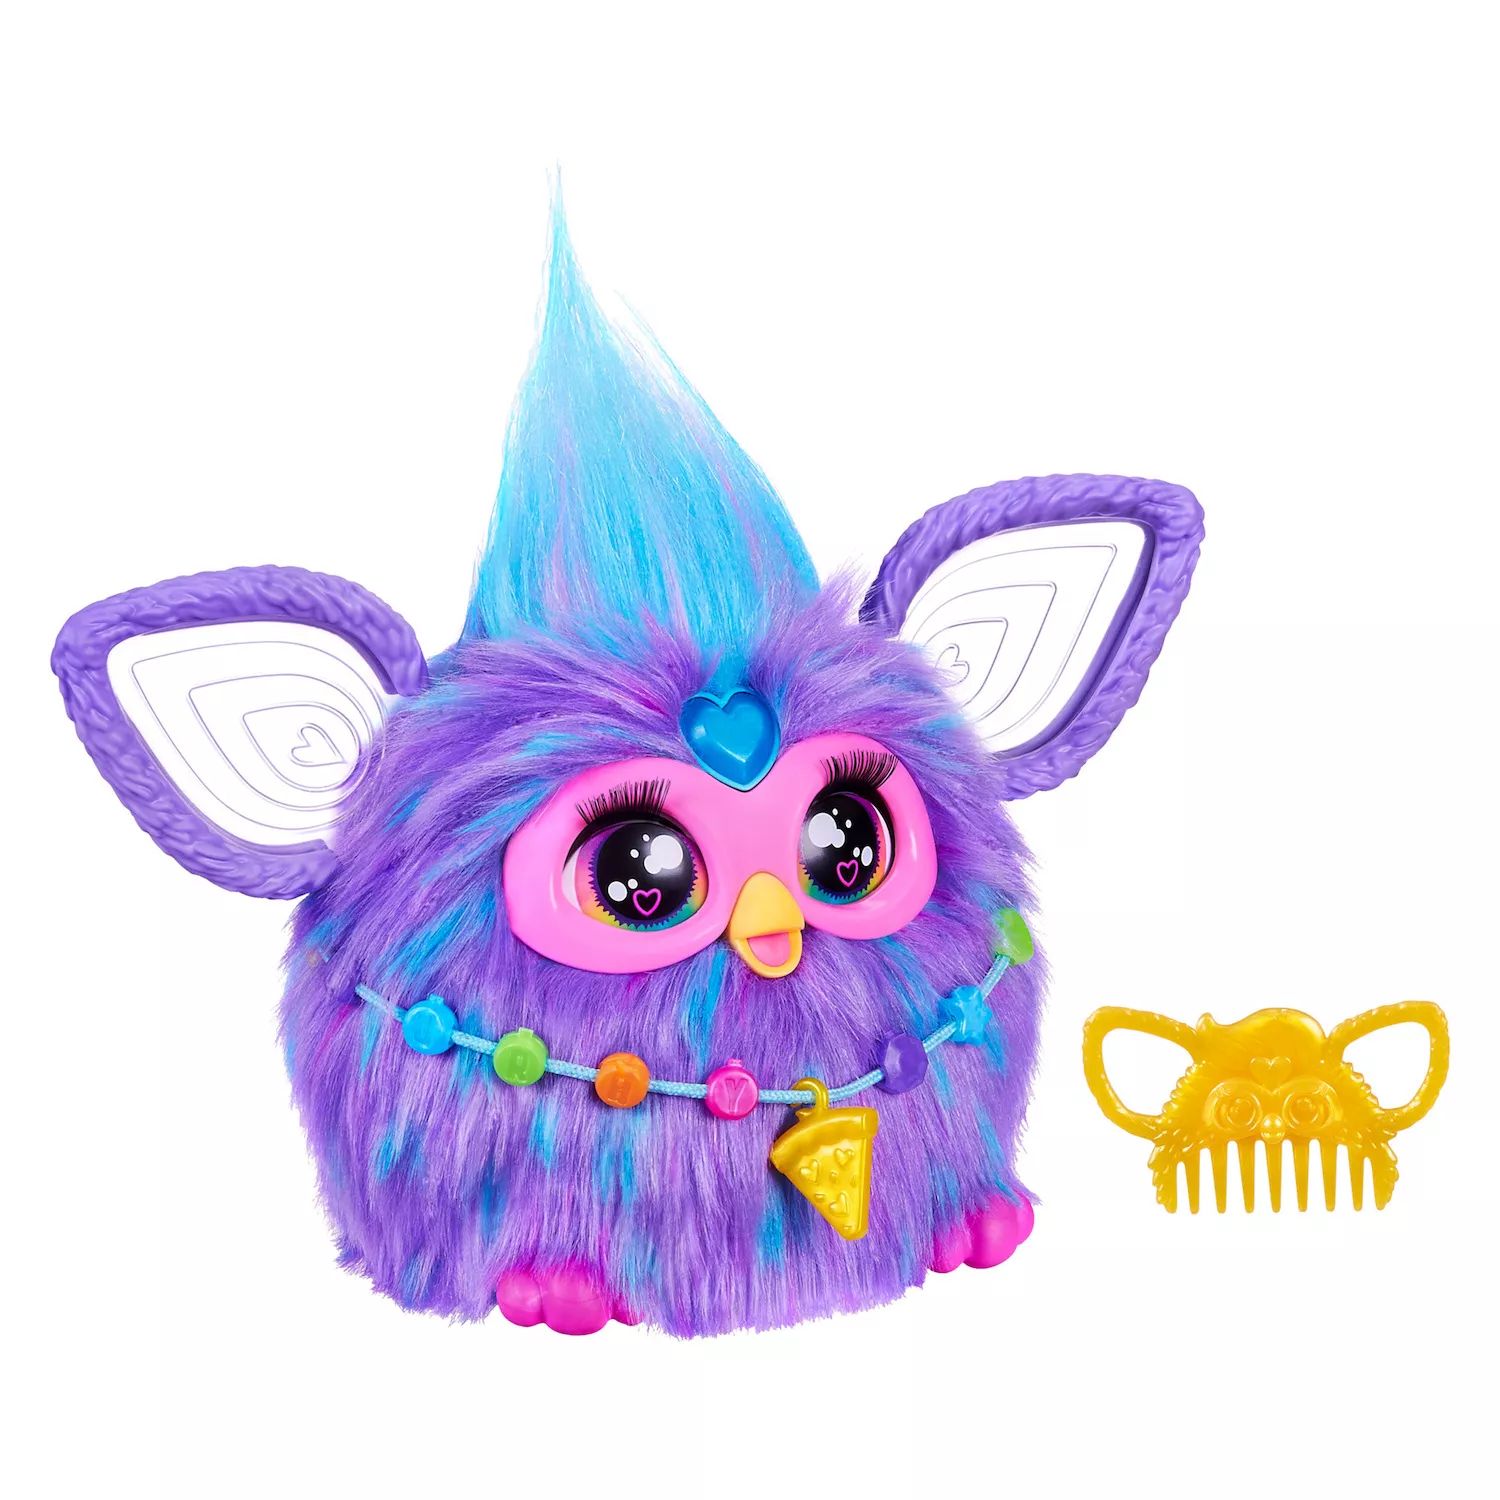 Интерактивная игрушка Hasbro Furby фиолетового цвета Hasbro цена и фото